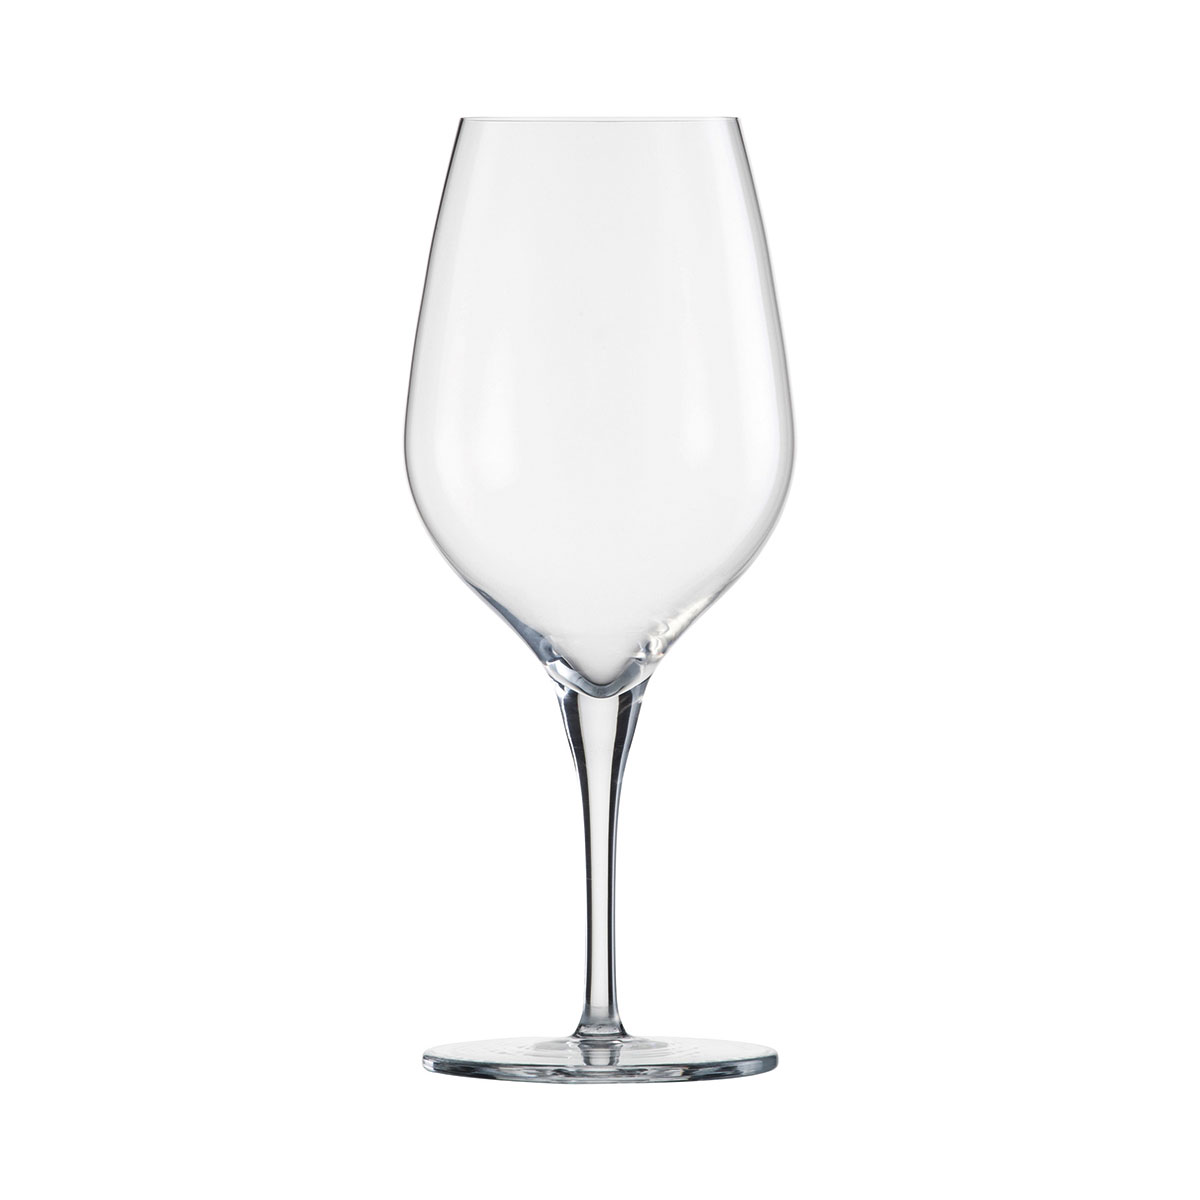 Schott Zwiesel Tritan Fiesta Bordeaux, Cabernet Glass, Single